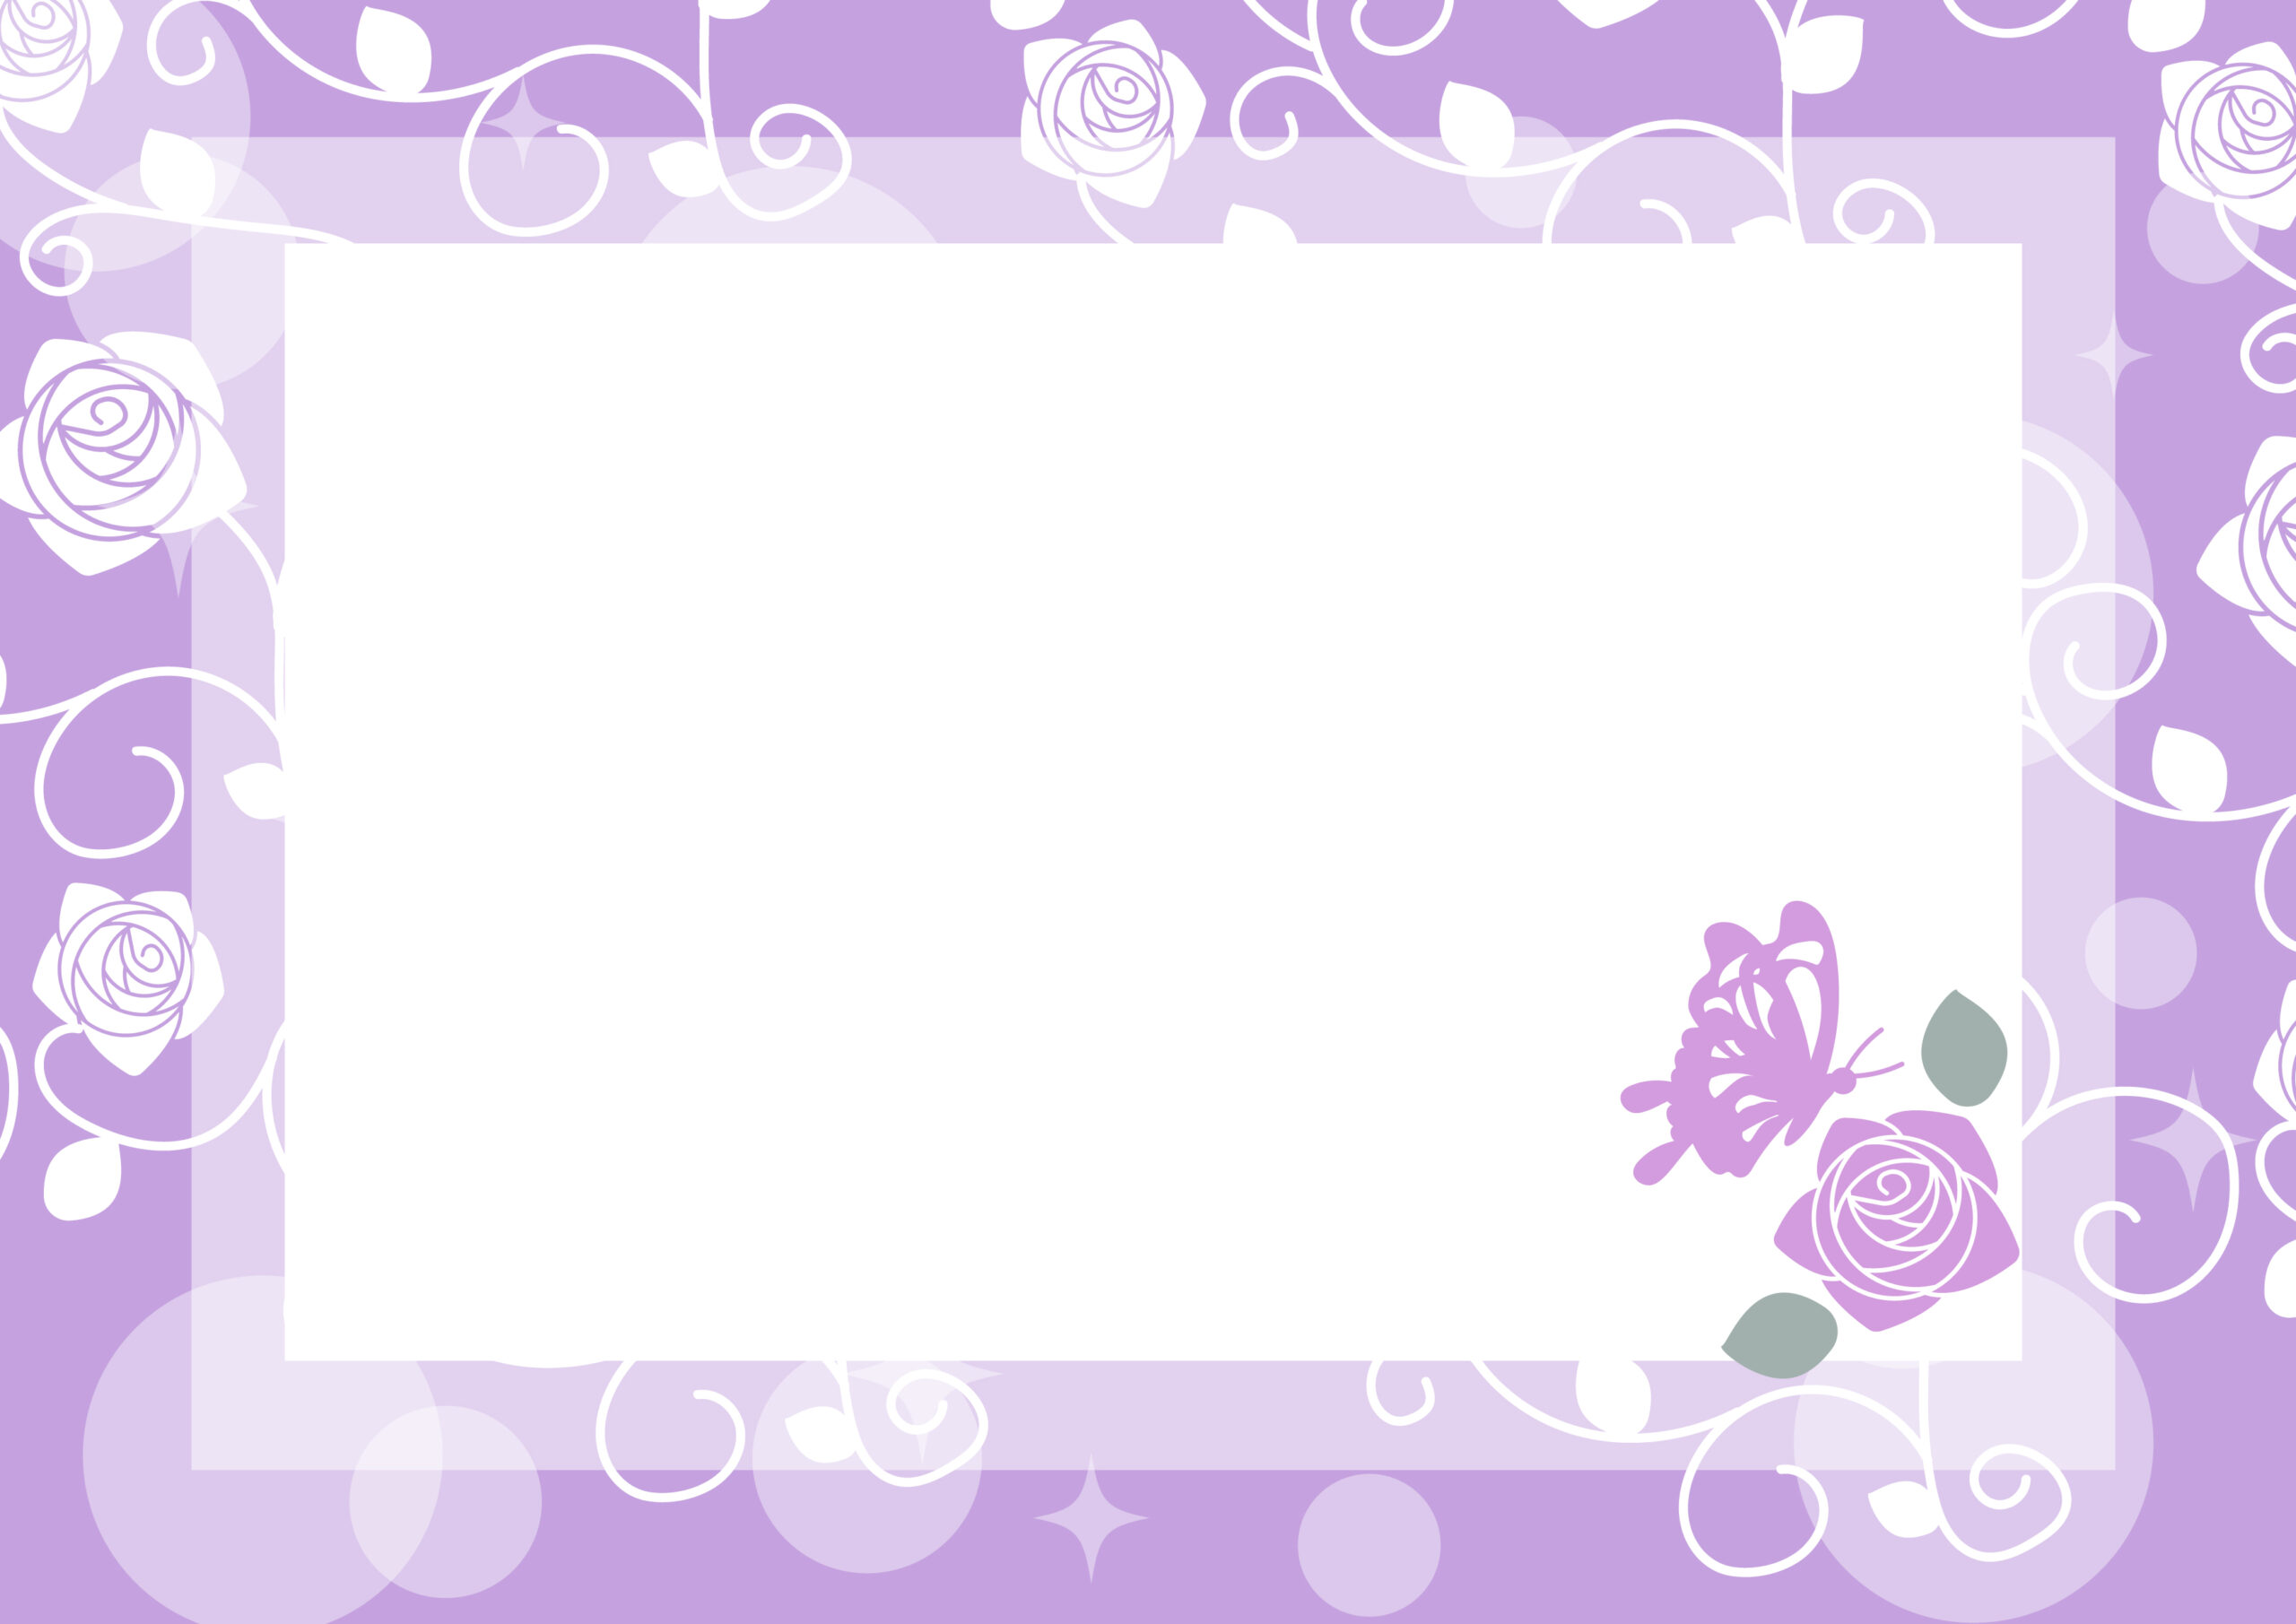 エレガントで上品なデザインの飾り枠・紫カラーのおしゃれなフレーム素材となり、薔薇の花と蝶々のイラストが描かれたテンプレートです。お花屋さんやエステ、ネイルサロンの挨拶メッセージや臨時休業の張り紙などにおすすめします。ダウンロード：J